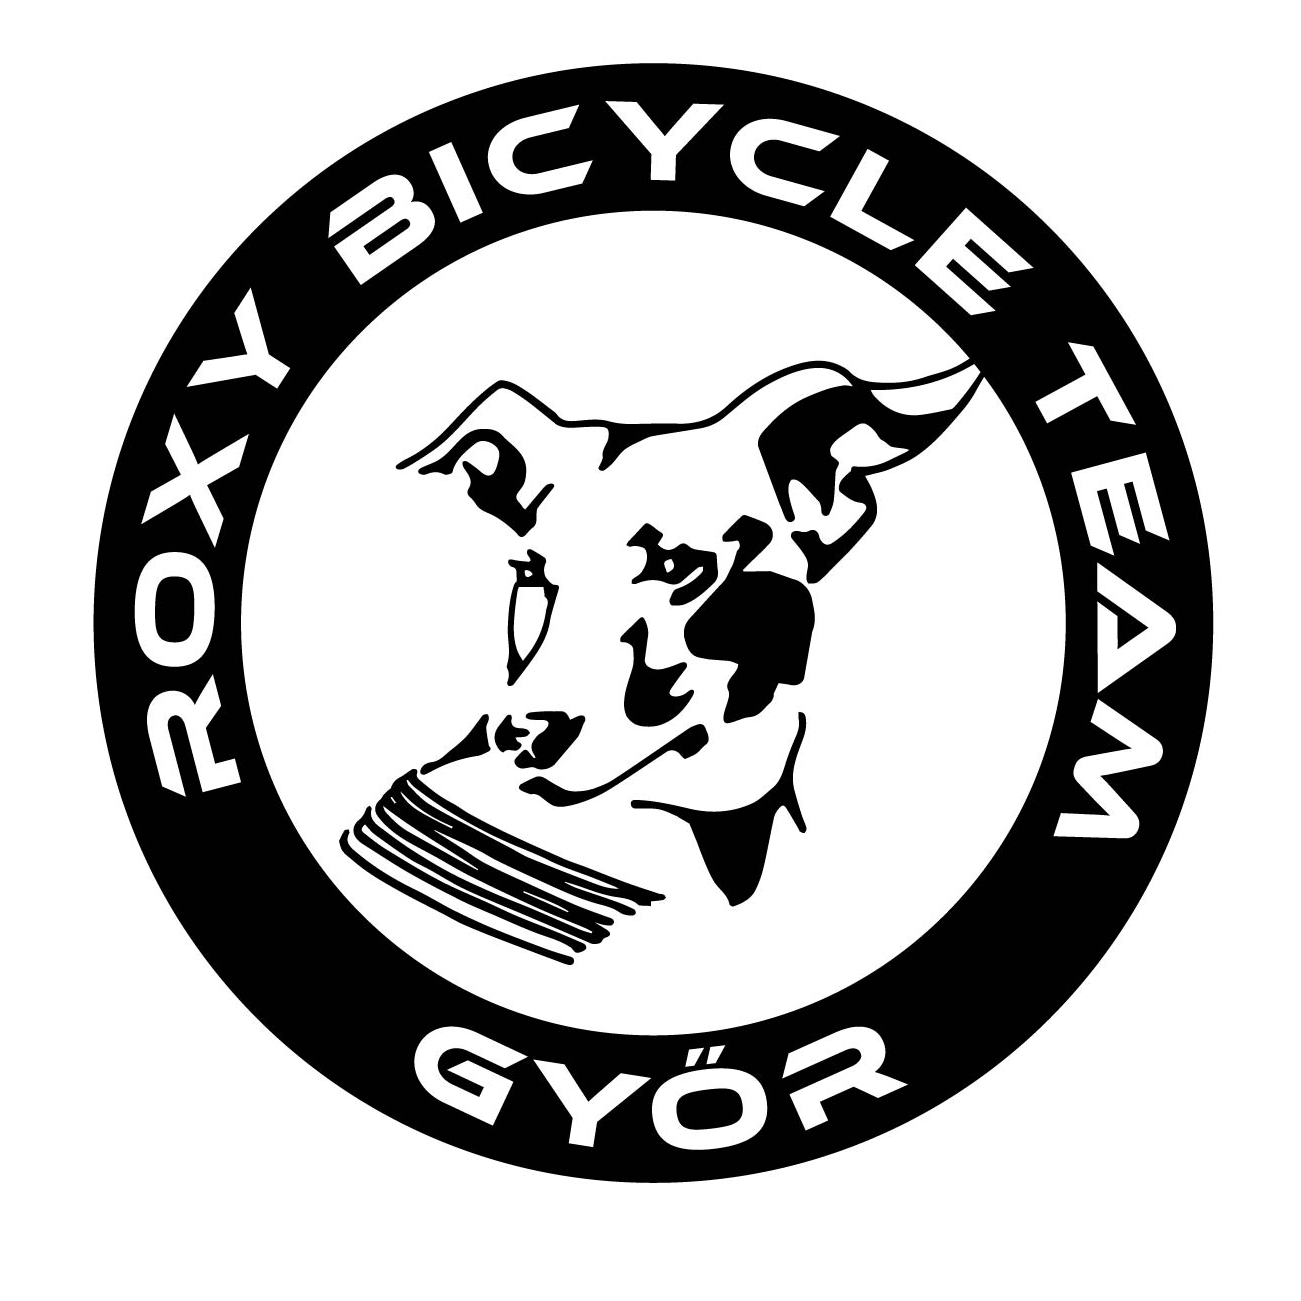 A Roxyról mintázott logo